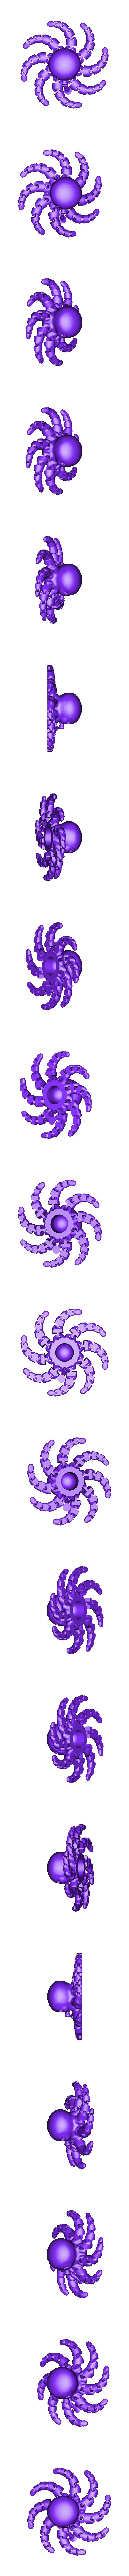 Octopus_spiral_sup_v5.7.stl Télécharger fichier STL gratuit Mini-pieuvre mignonne • Plan pour imprimante 3D, mcgybeer